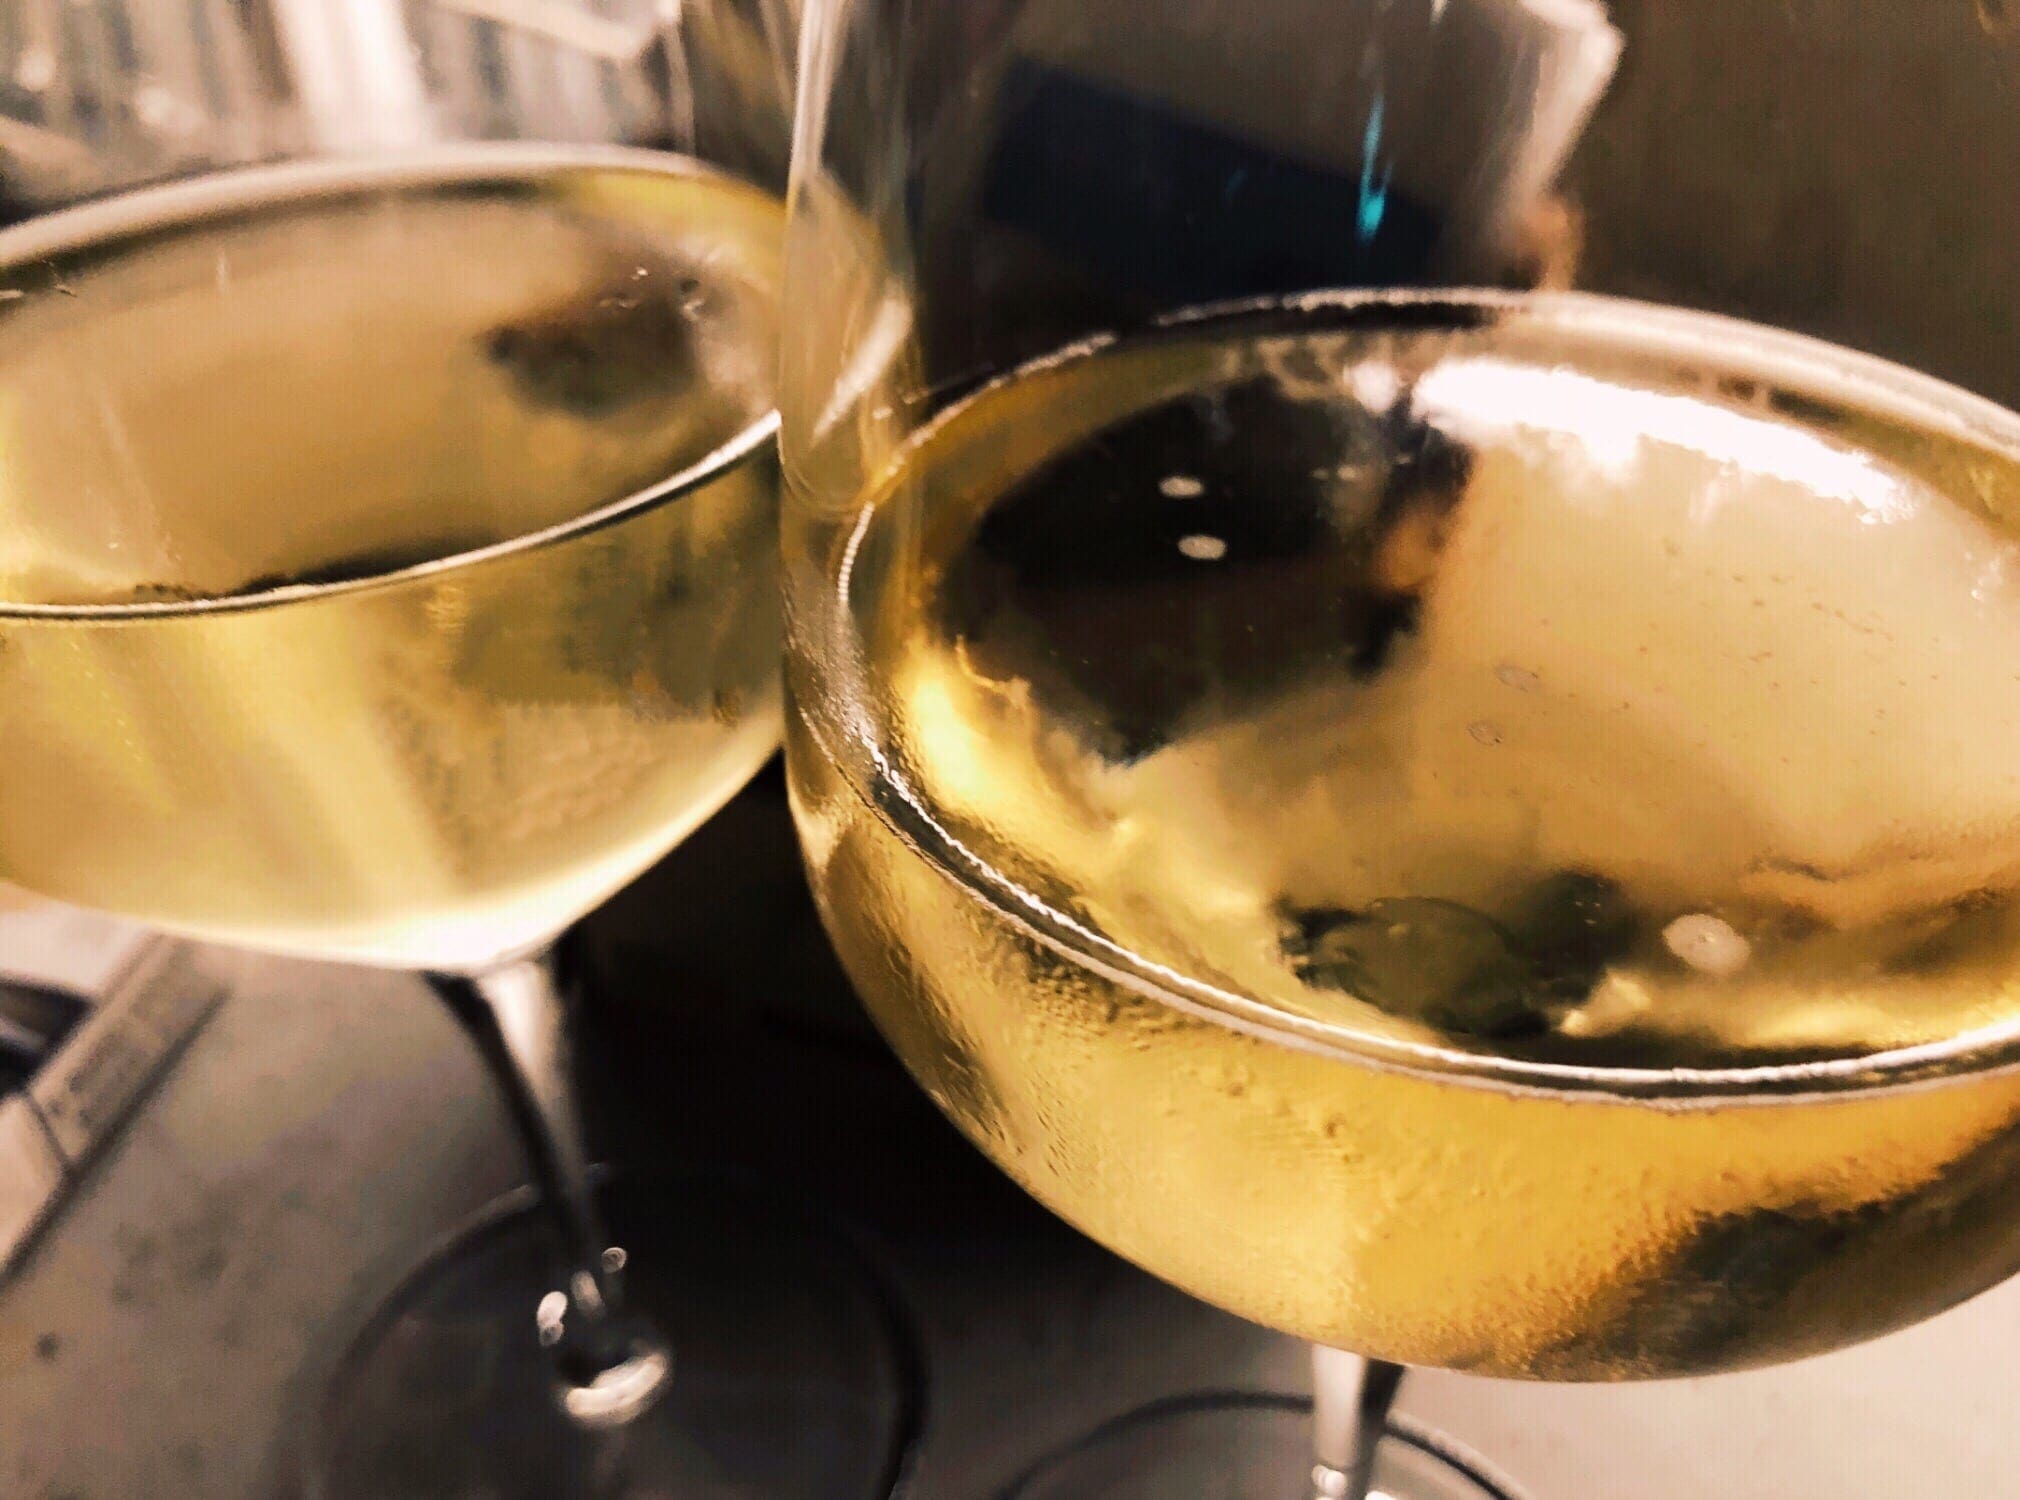 Südafrikanische Weine und Olivenöl - Eine – vielleicht nicht ganz so neue – Weißwein Information